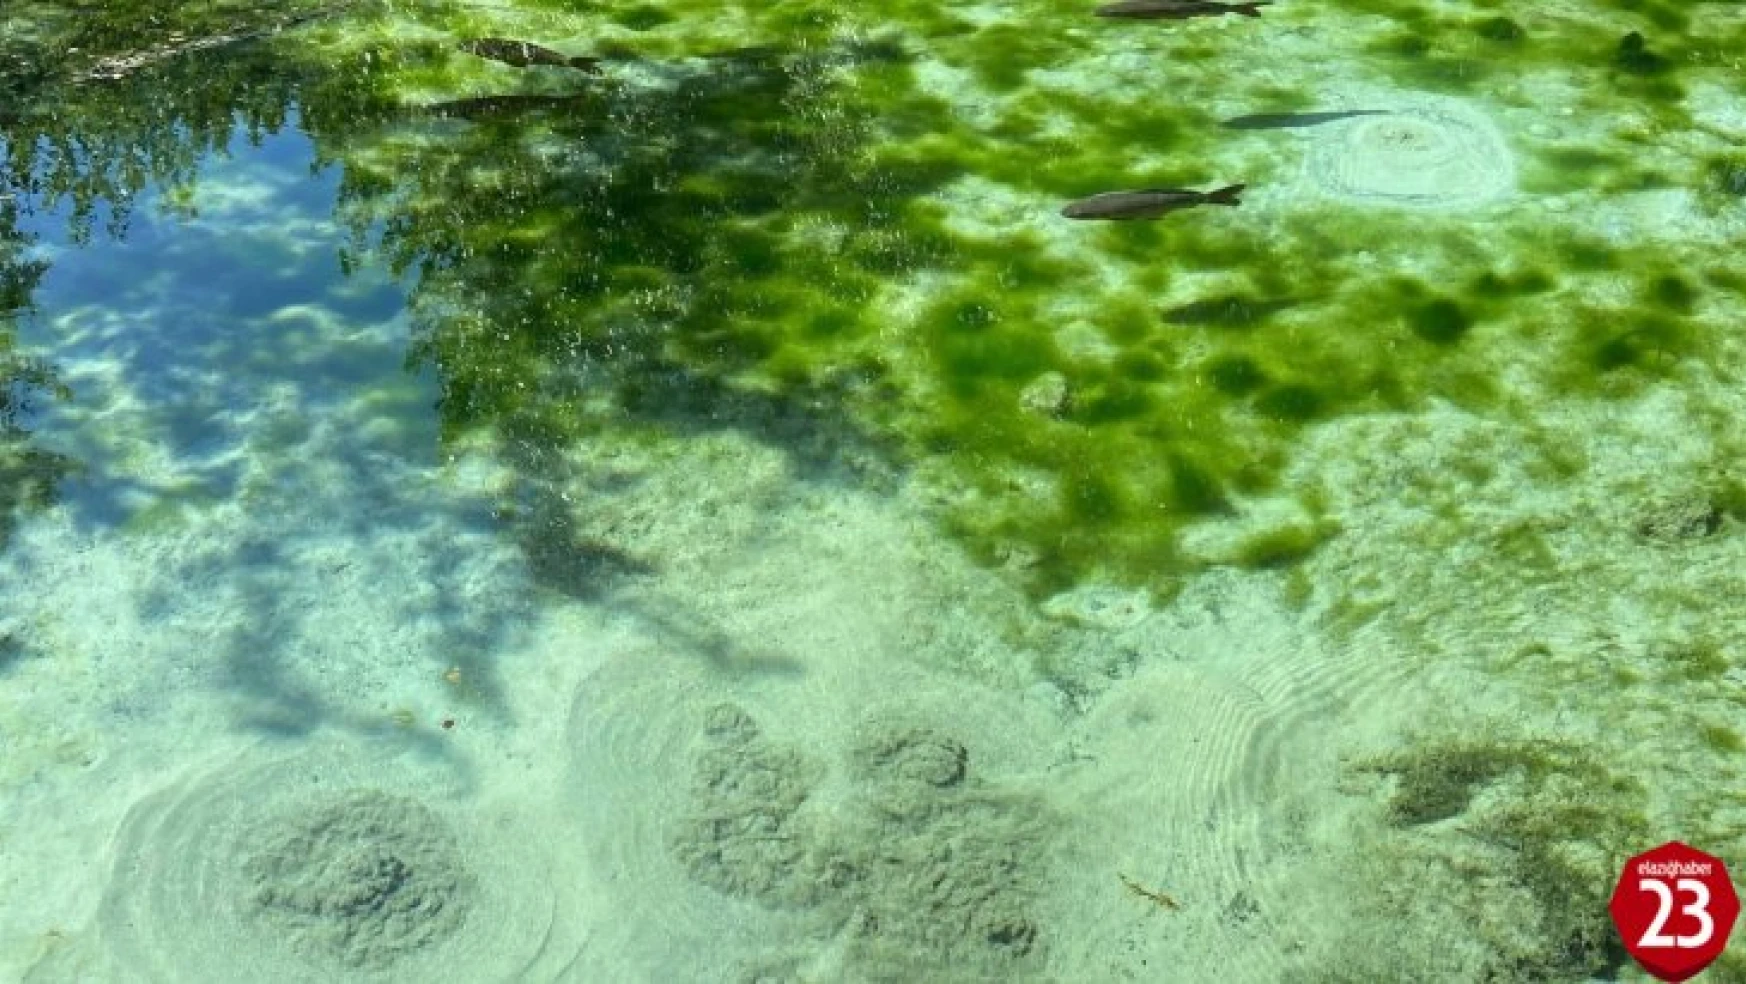 Elazığ'da Gizemli Dipsiz Göl, Görenleri Hem Şaşırtıyor Hem De Büyülüyor